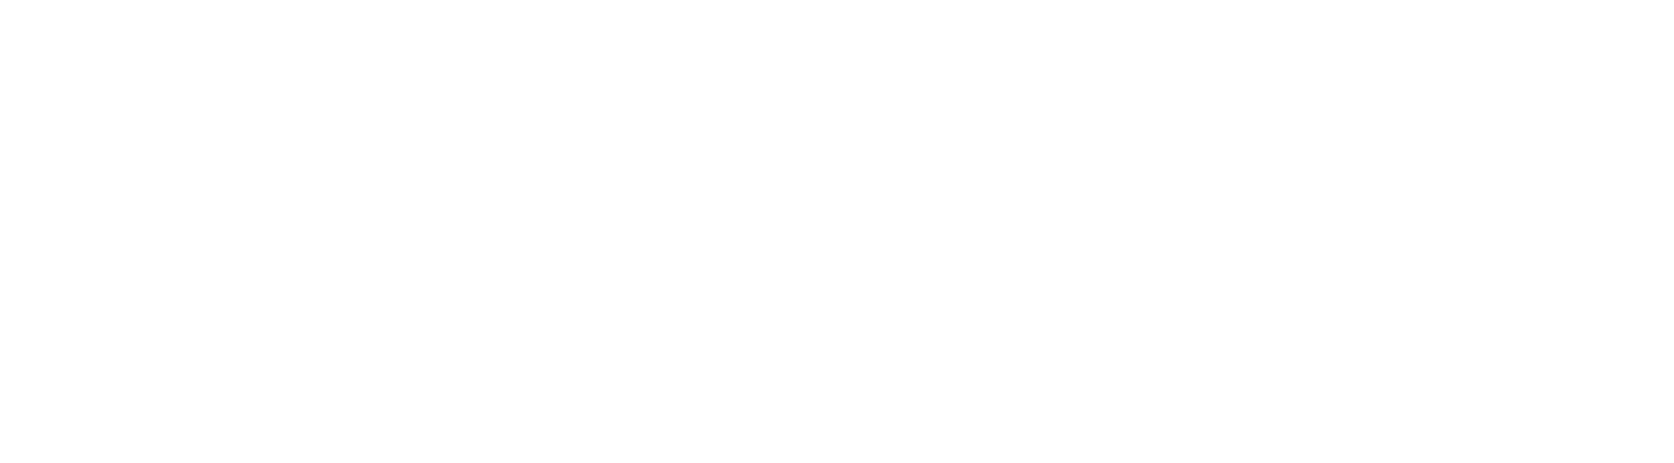 NUTRIMUC